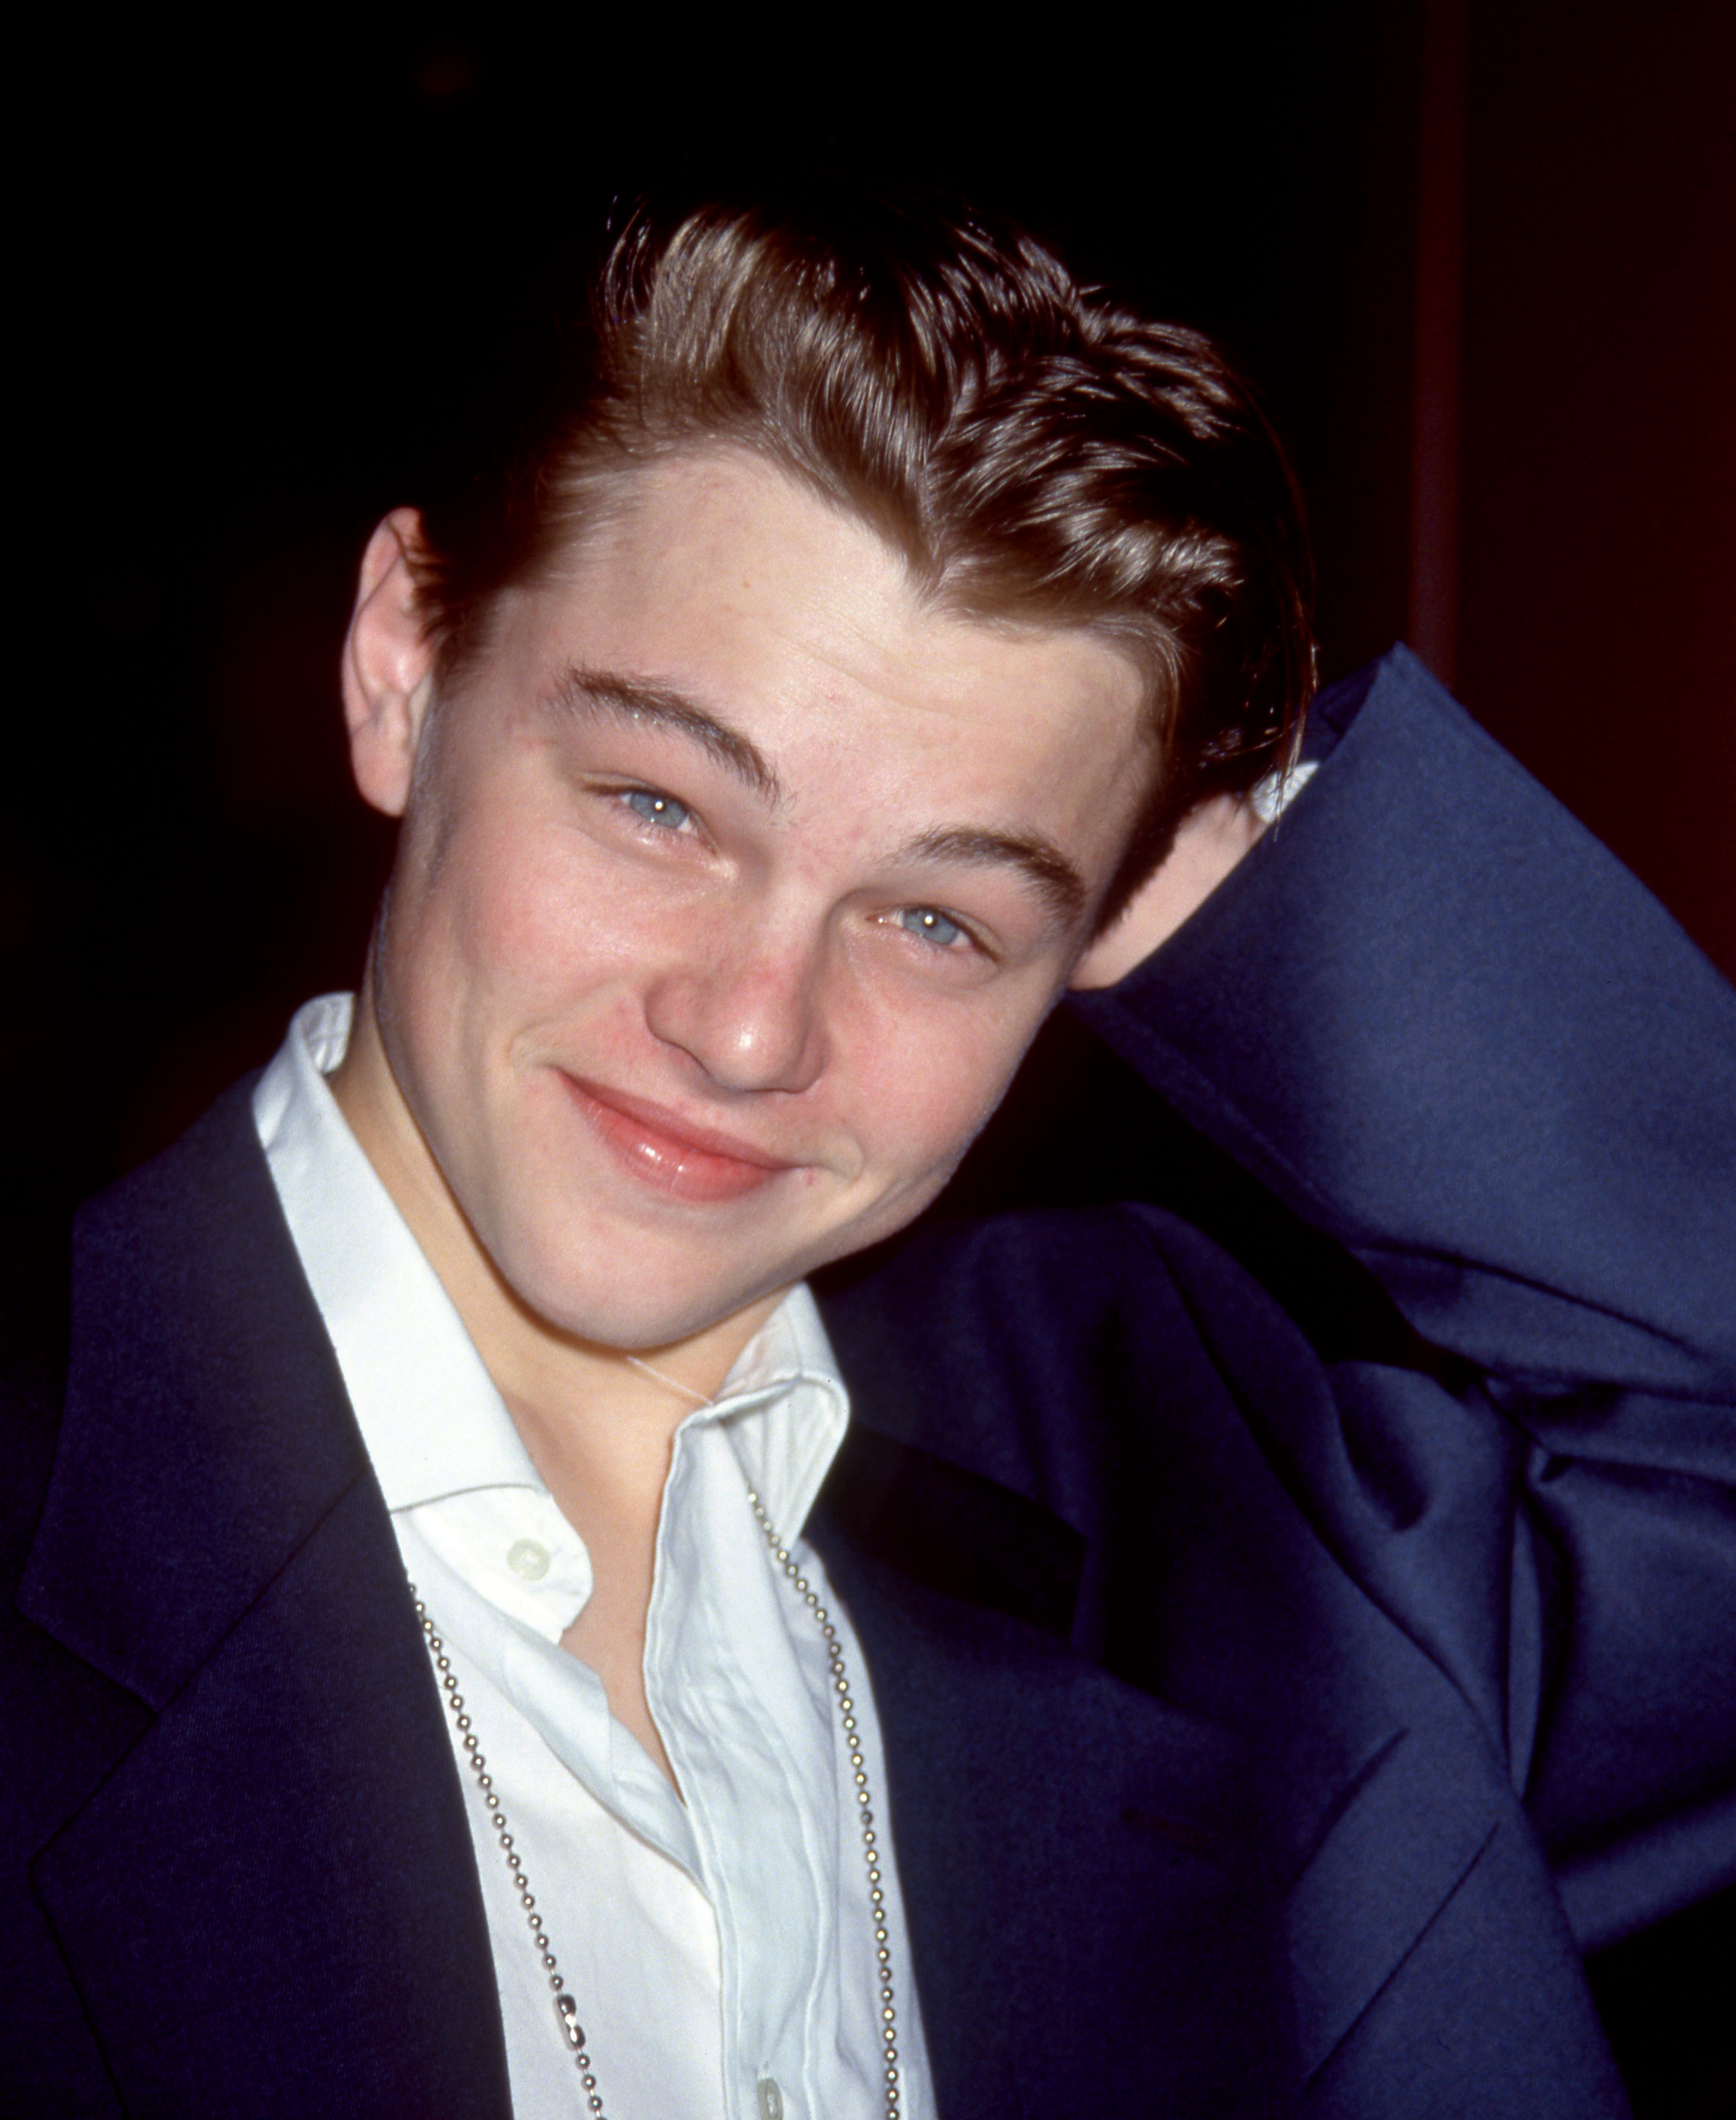 Leonardo DiCaprio en el estreno en Los Ángeles de "This Boy's Life", 1993 | Fuente: Getty Images